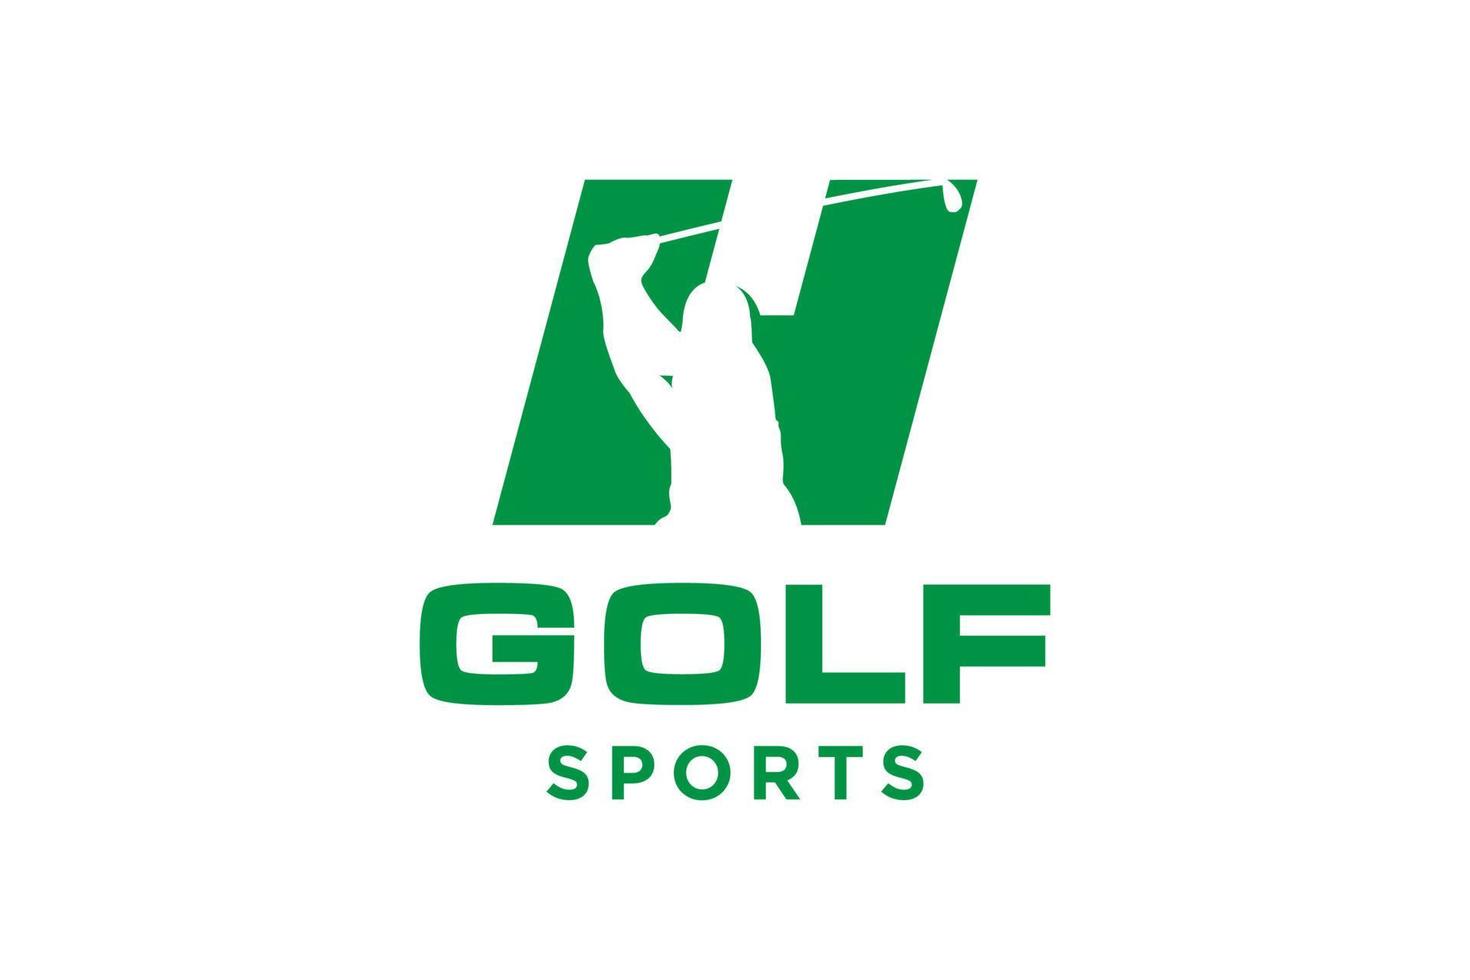 logotipo do ícone da letra do alfabeto h para modelo de vetor de design de logotipo de golfe, rótulo vetorial de golfe, logotipo do campeonato de golfe, ilustração, ícone criativo, conceito de design